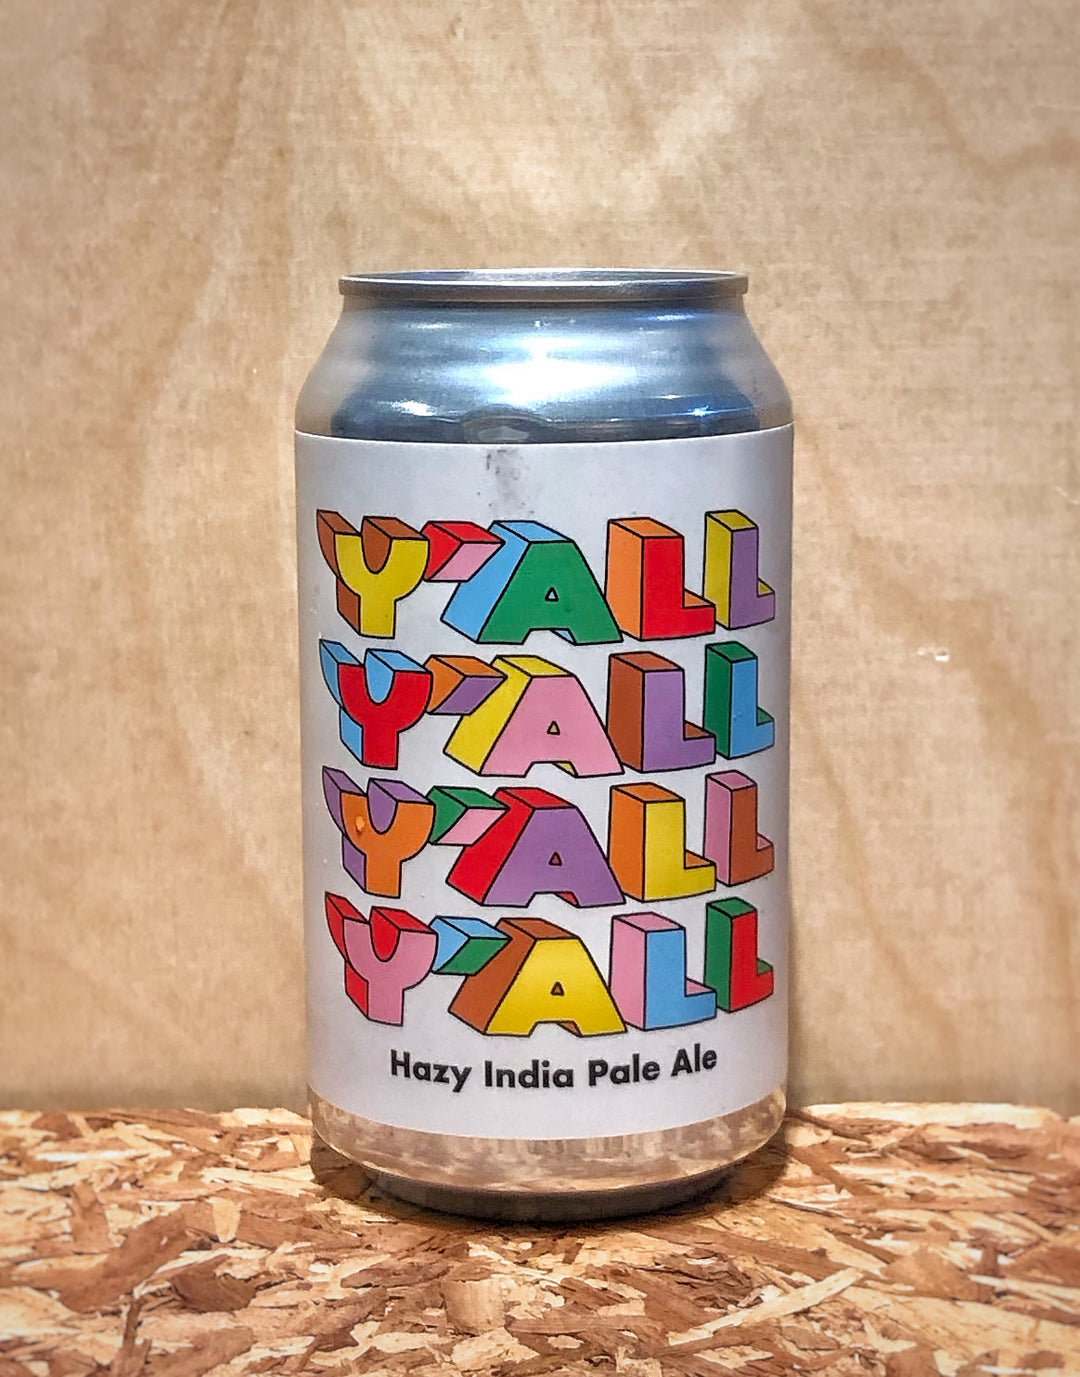 Prairie Artisan Ales 'Y'all' Hazy India Pale Ale (Oklahoma City, OK)